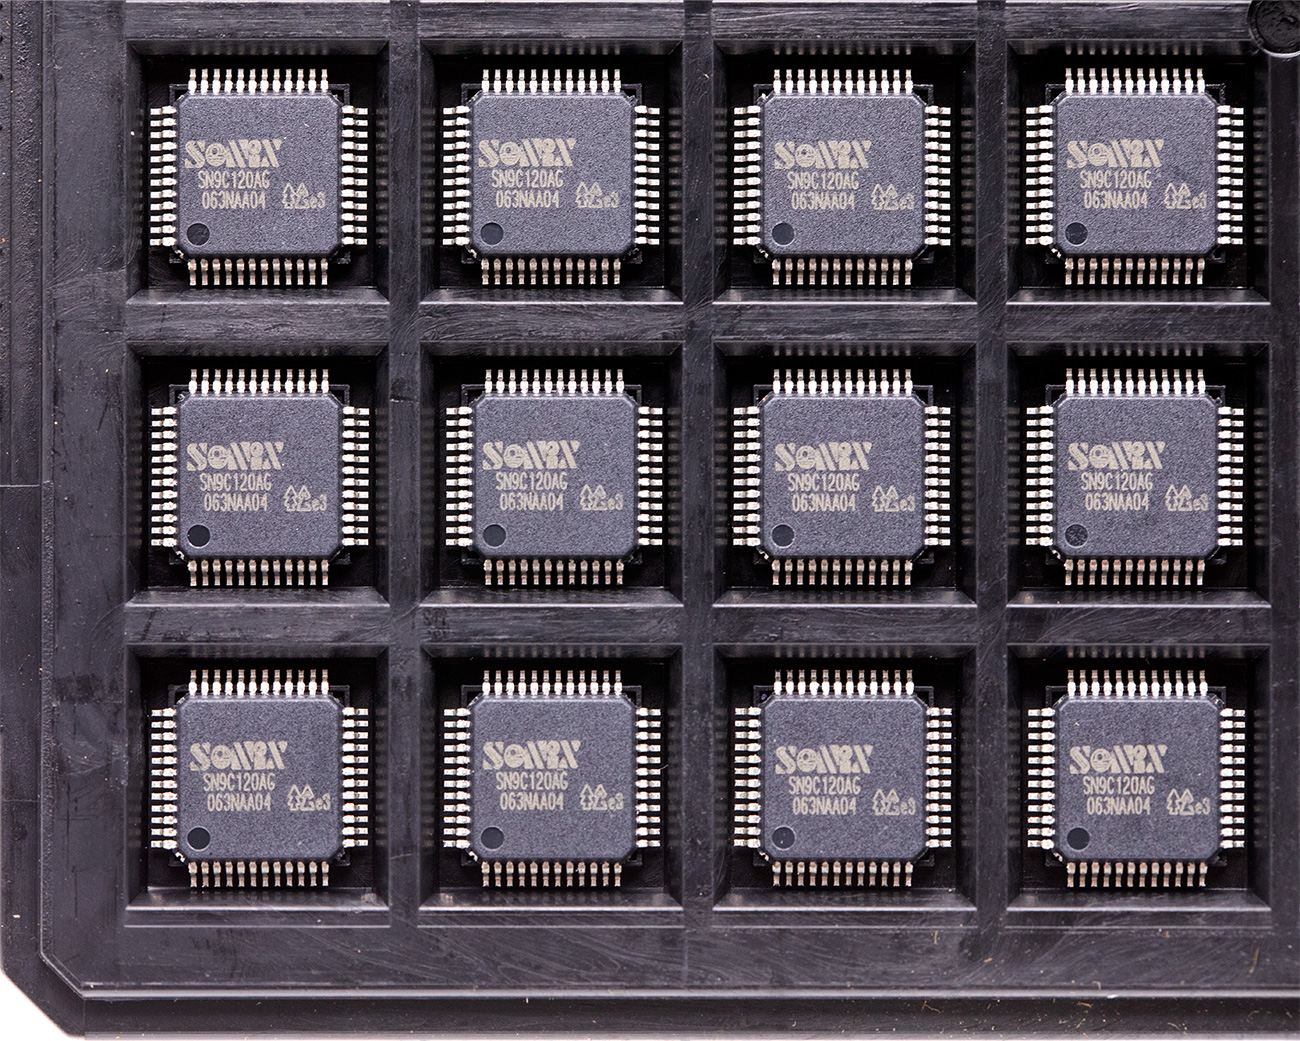 松瀚SN9C120AG， SONIX VGA图像传感器主控，USB 电脑摄像头PC Camera控制器，支持多种VGA sensor的DSP摄像头主控